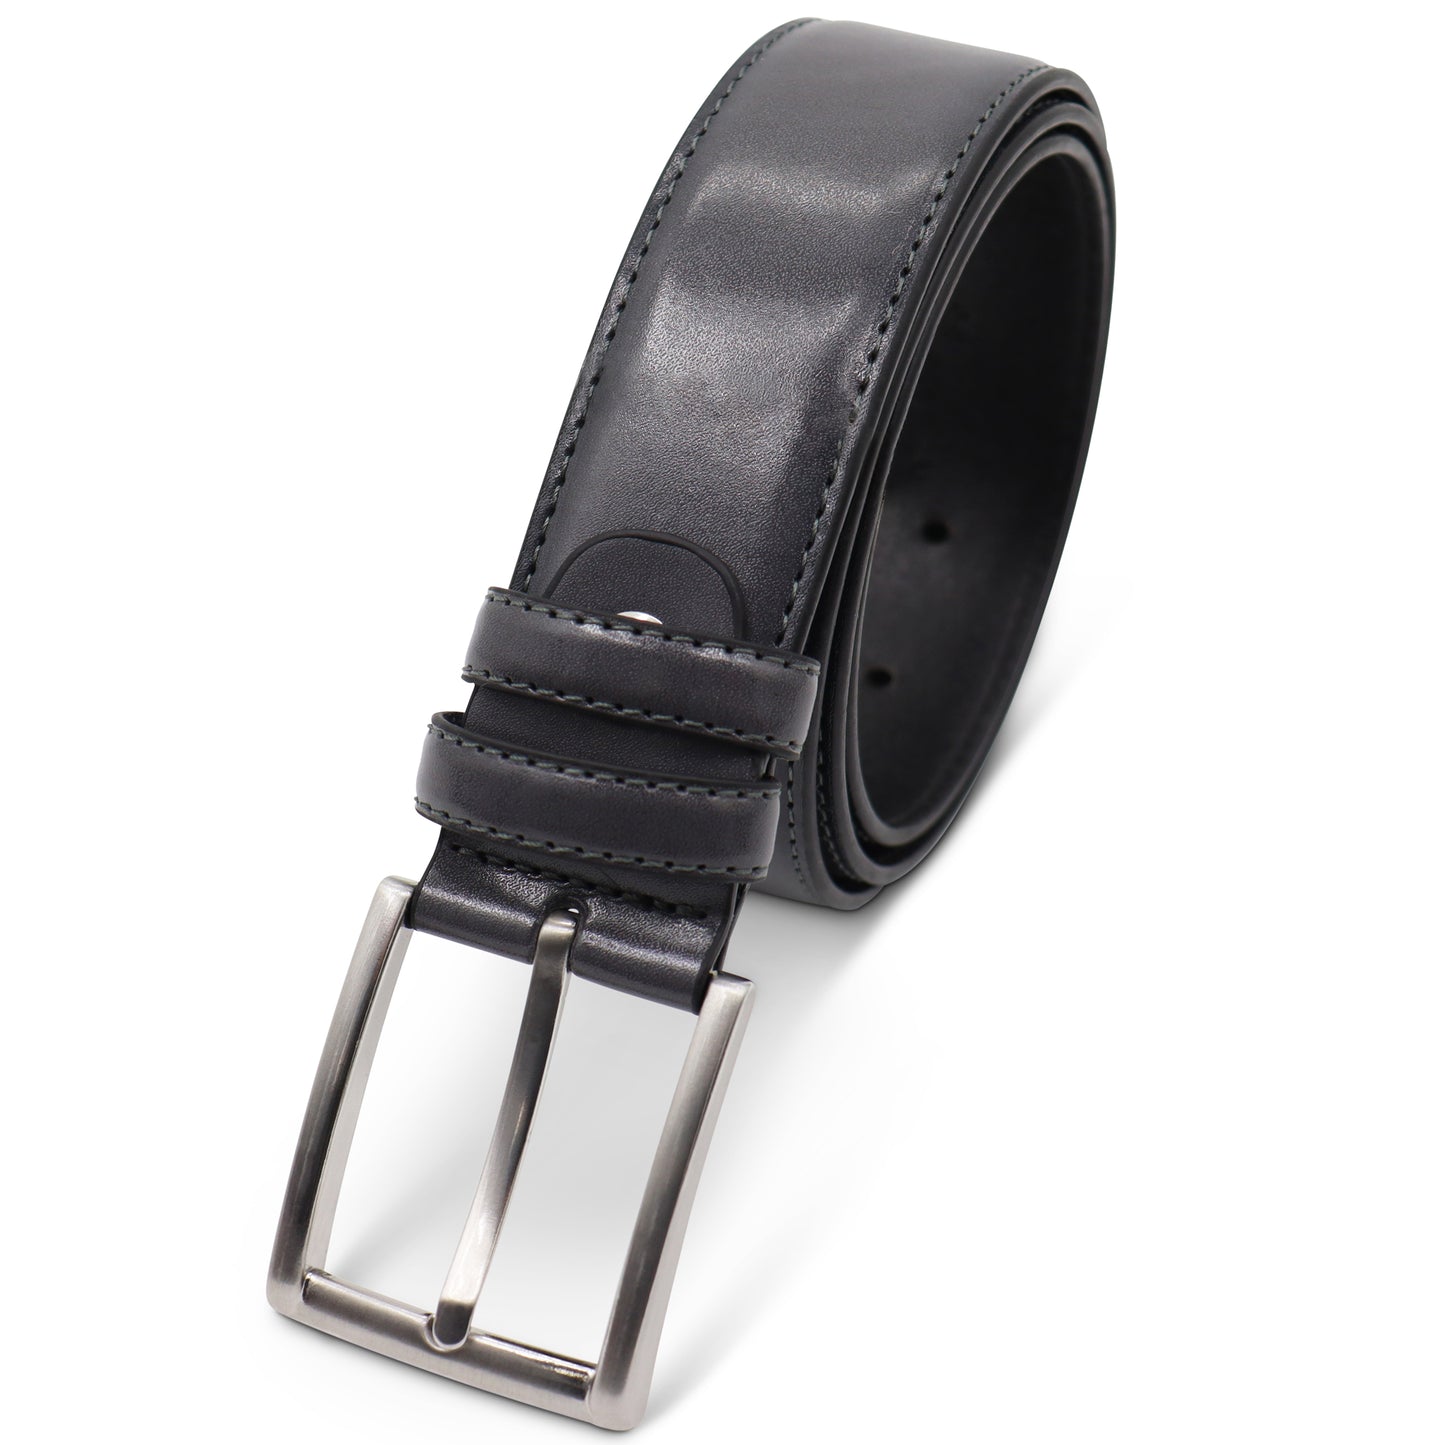 Safekeepers Men's Belt - Men's Belt - Belt Leather - leather belt - Stitched - Black